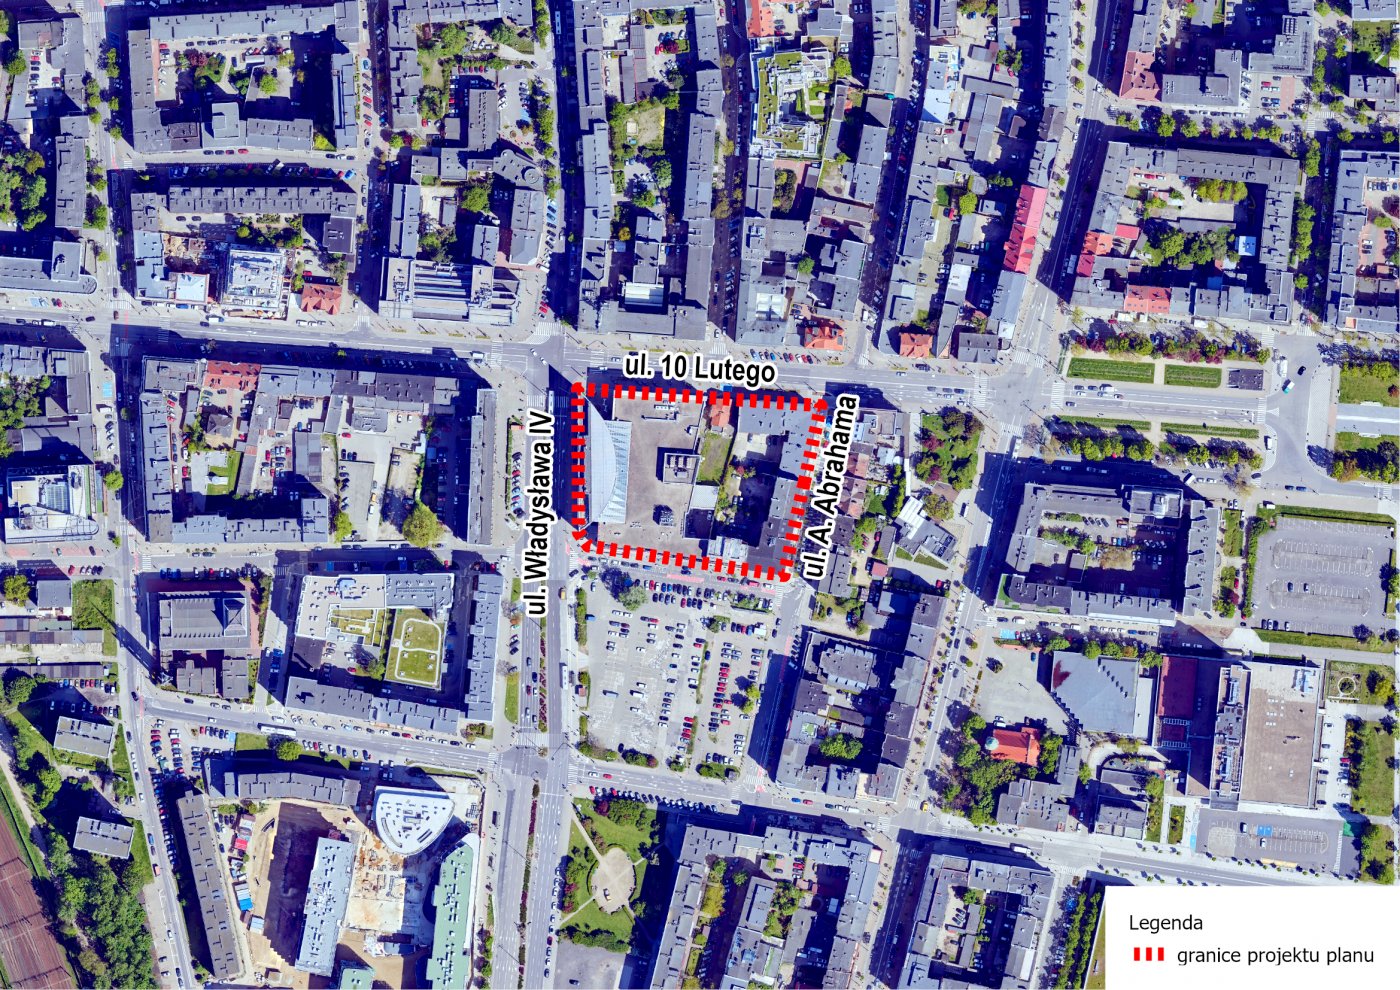 Projekt planu dotyczy obszaru w Śródmieściu Gdyni - na fragmencie mapy zaznaczonego czerwoną, przerywaną linią